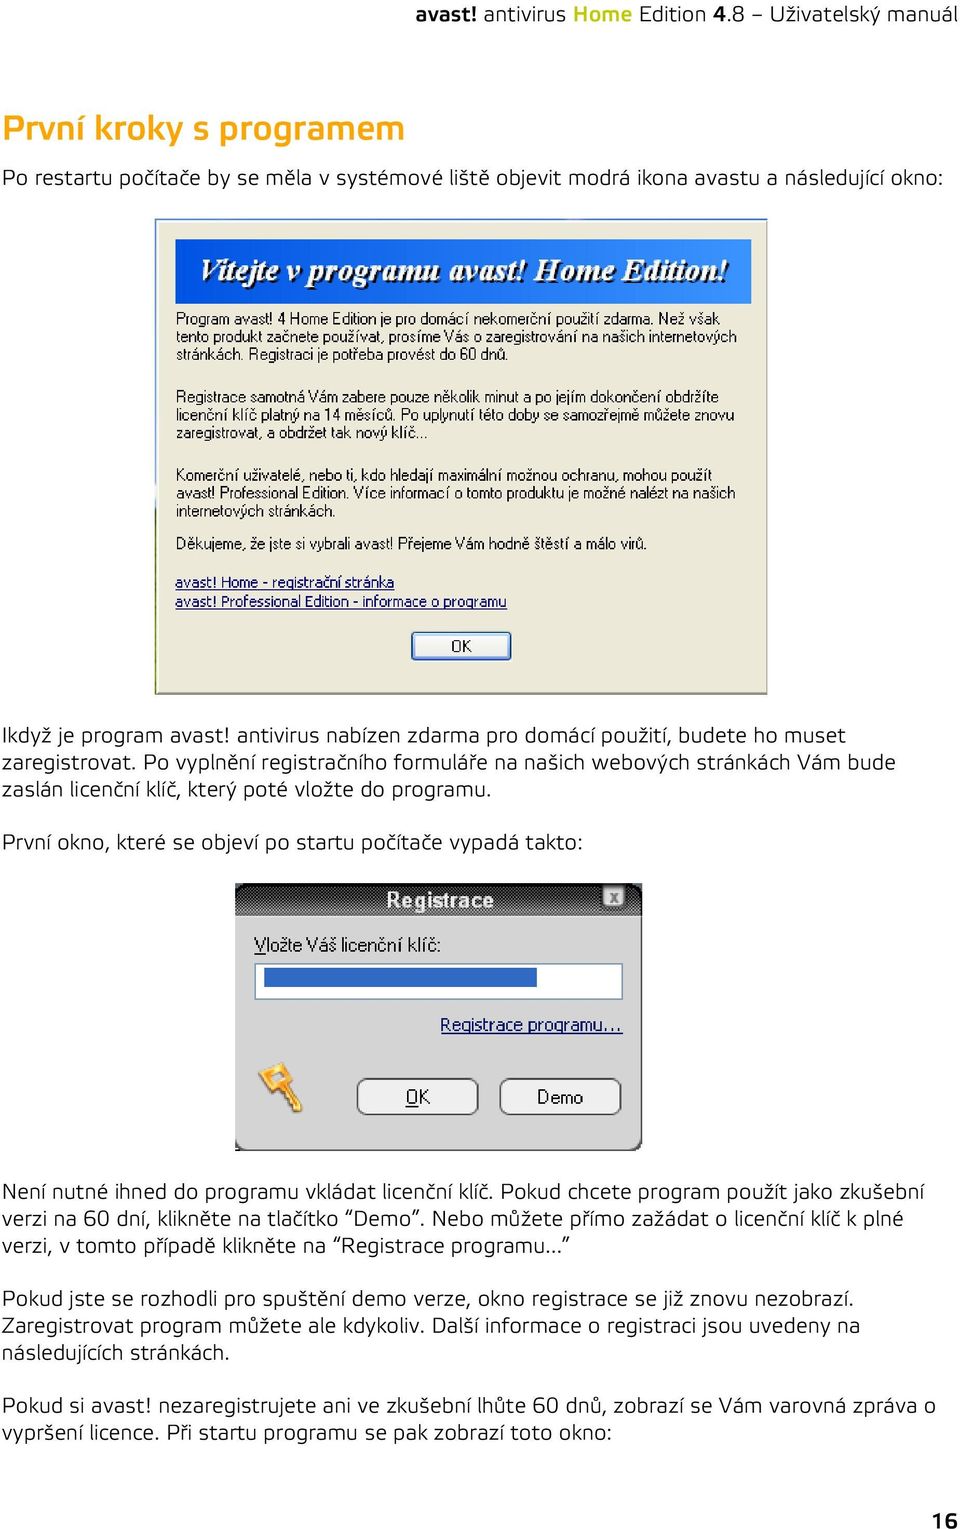 avast! antivirus Home Edition 4.8 Uživatelský manuál avast! antivirus Home  Edition 4.8 Uživatelský manuál - PDF Stažení zdarma